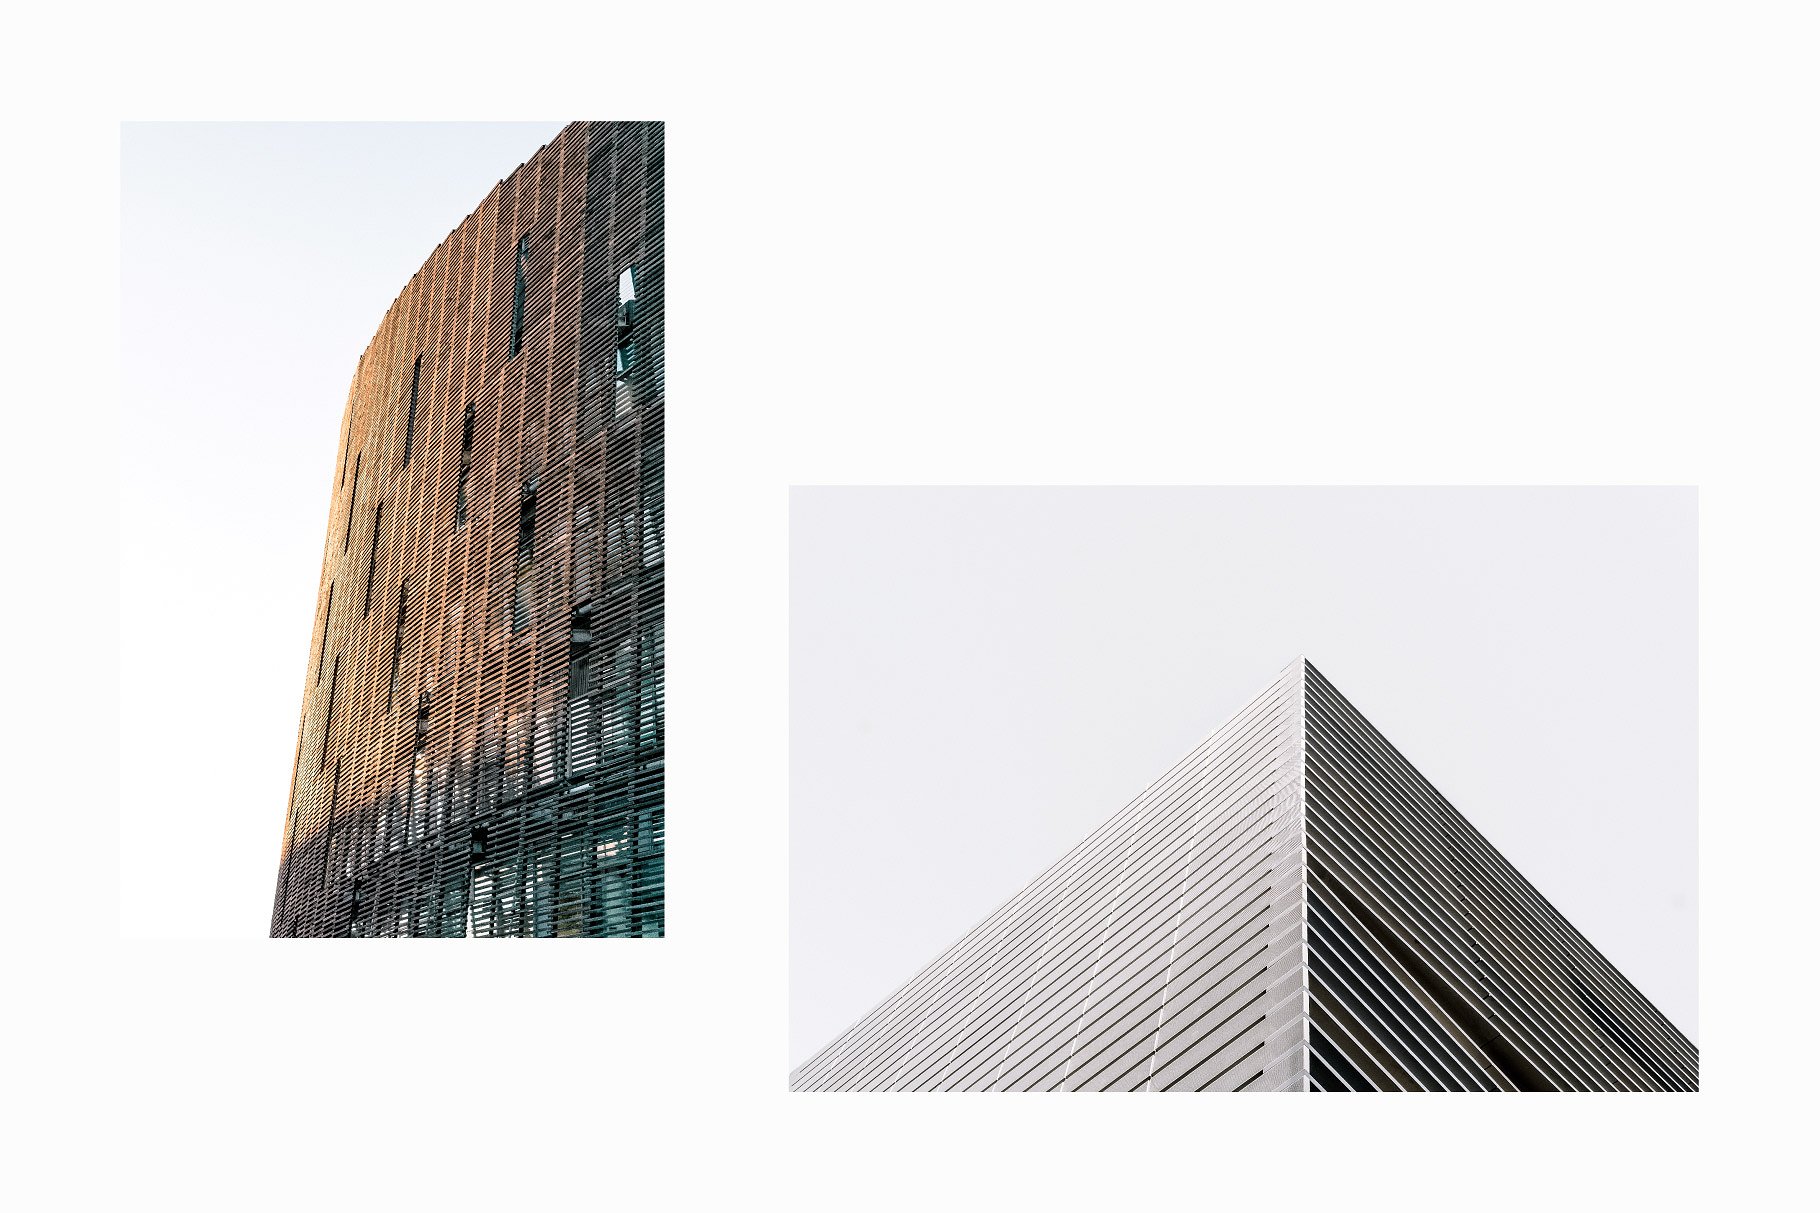 10张高分辨率建筑照片V.3 10 Architecture Photos Pack Vol.3插图2